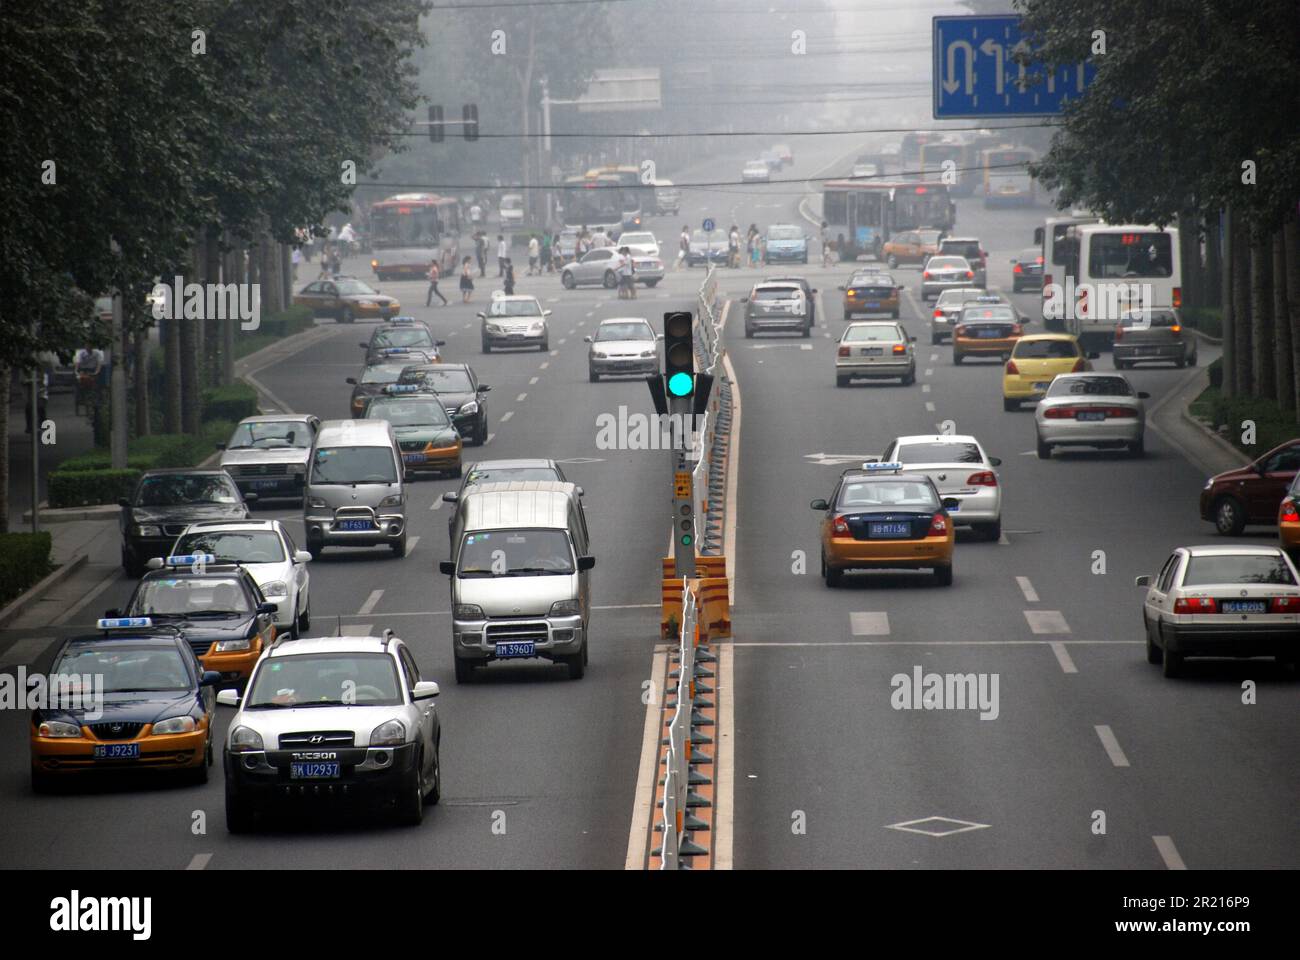 Peking, China - Verkehr auf den Straßen von Peking. Autofahrer fahren in dem schweren Smog, der die Sicht einschränkte, da starker Smog über Peking hängt, während die Verschmutzung bei hohen Temperaturen und hoher Luftfeuchtigkeit zunimmt. Stockfoto